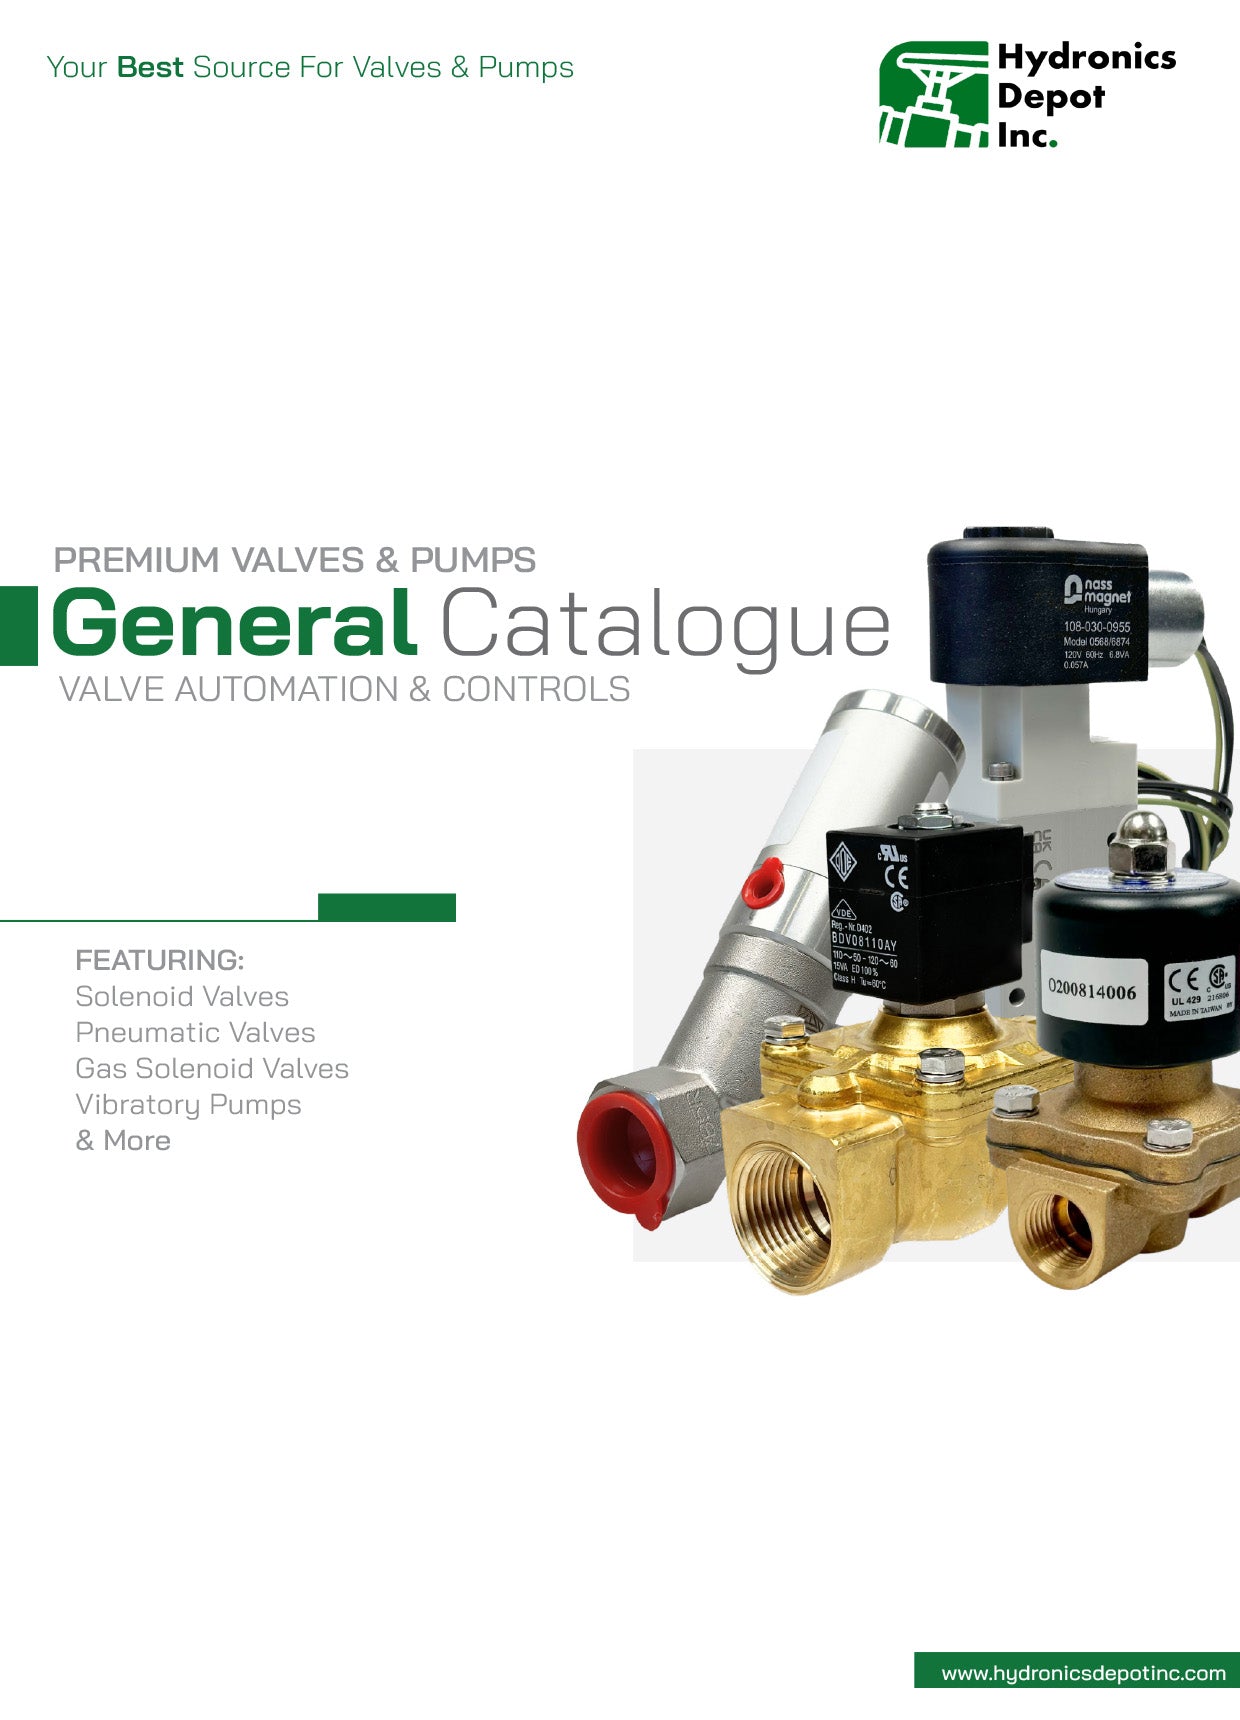 HDI General Catalogue